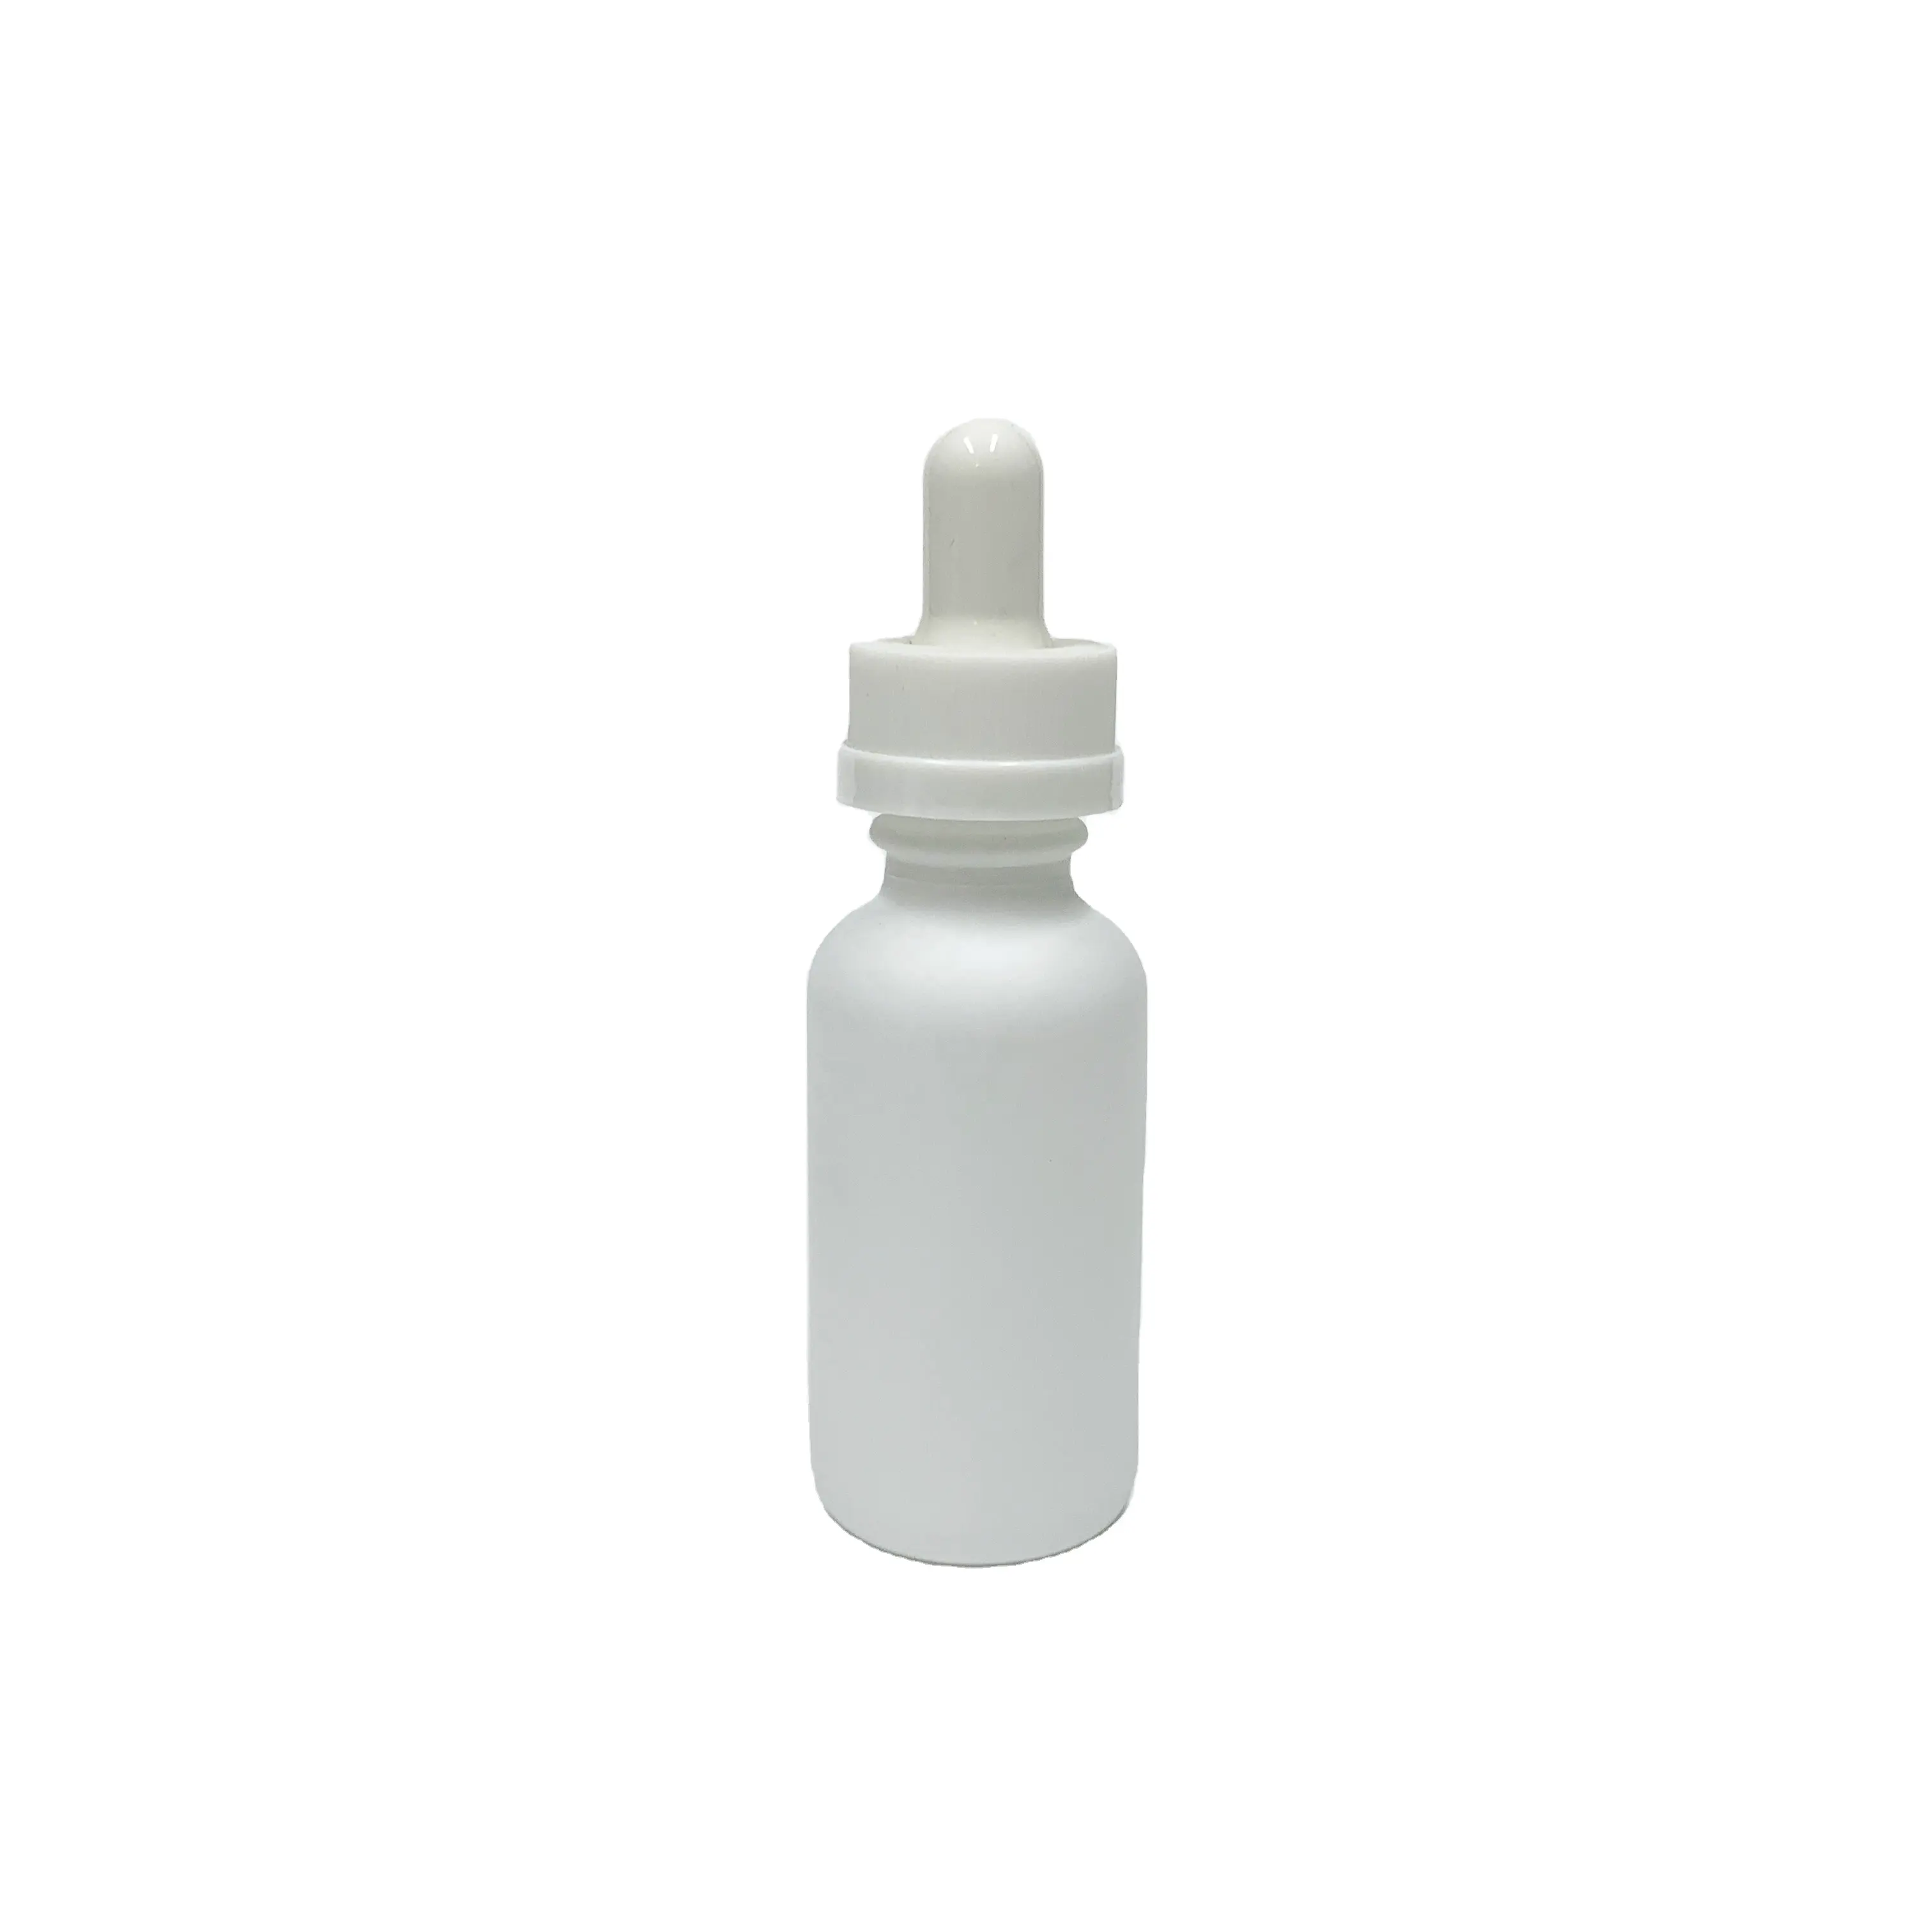 Garrafa de óleo essencial de vidro branco fosco, 2oz/60ml com plástico à prova de crianças